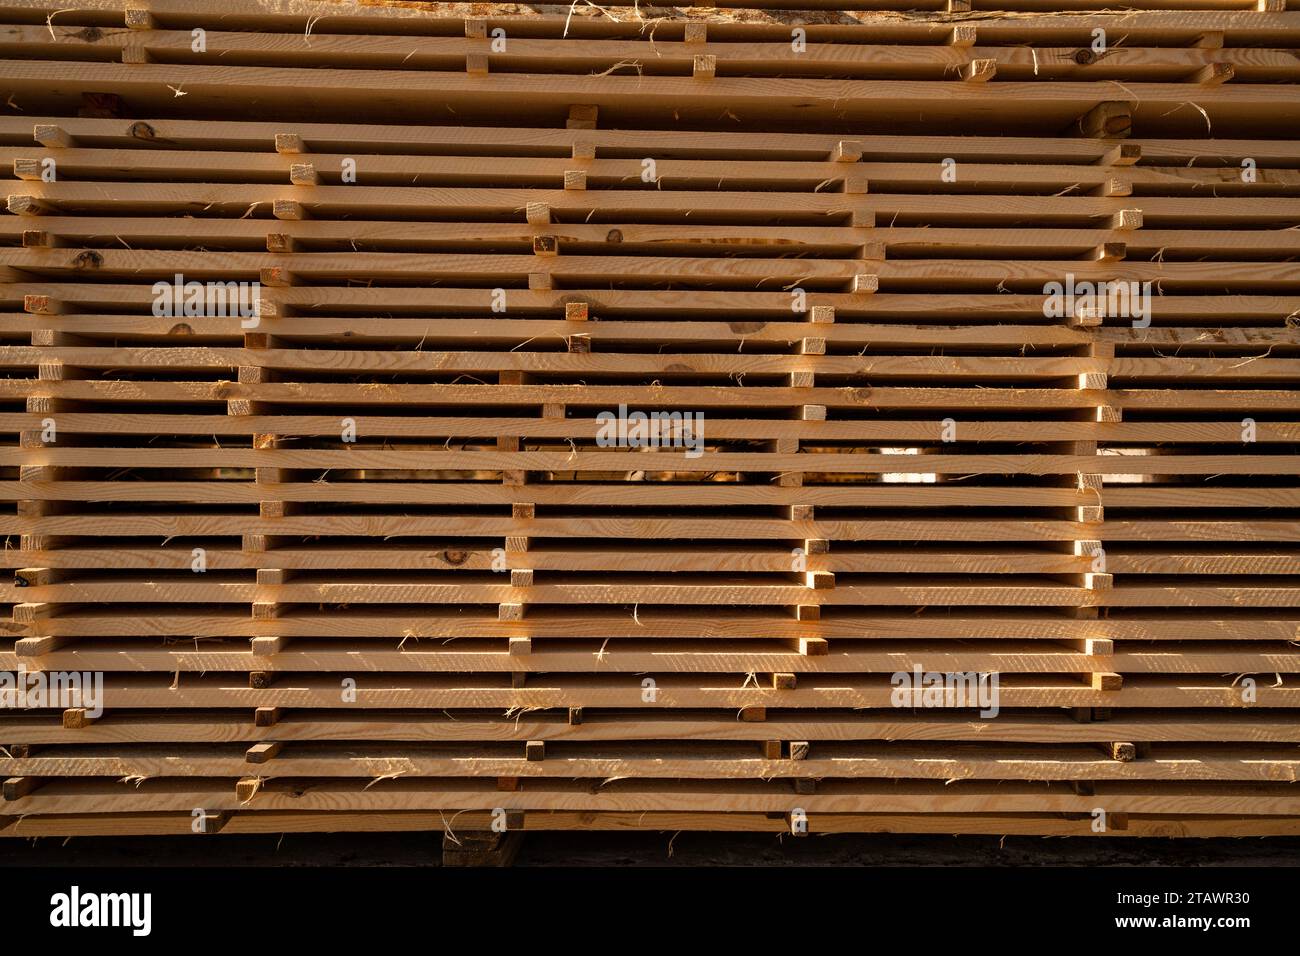 Celosia de madera - - 3D Warehouse